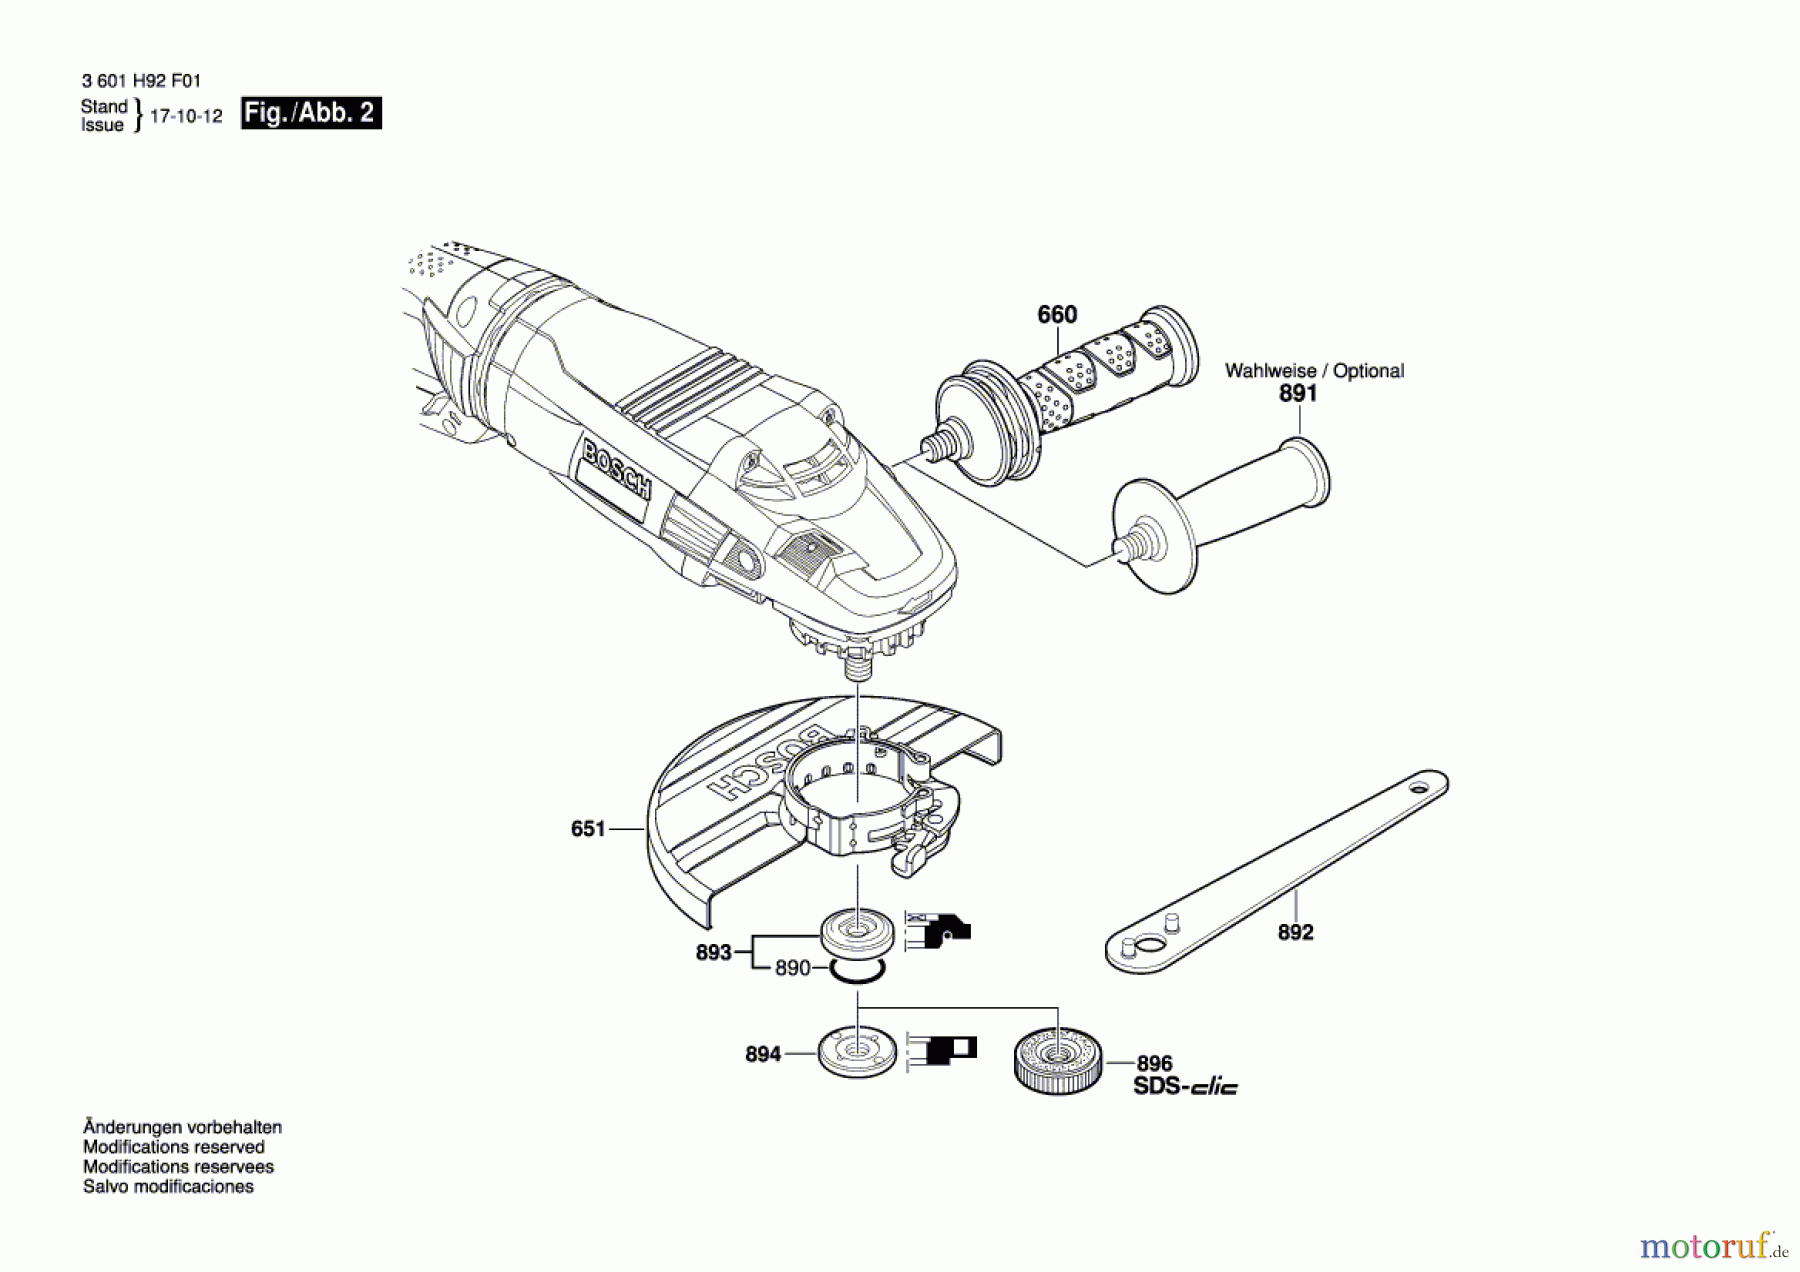  Bosch Werkzeug Winkelschleifer GWS 26-230 LVI Seite 2